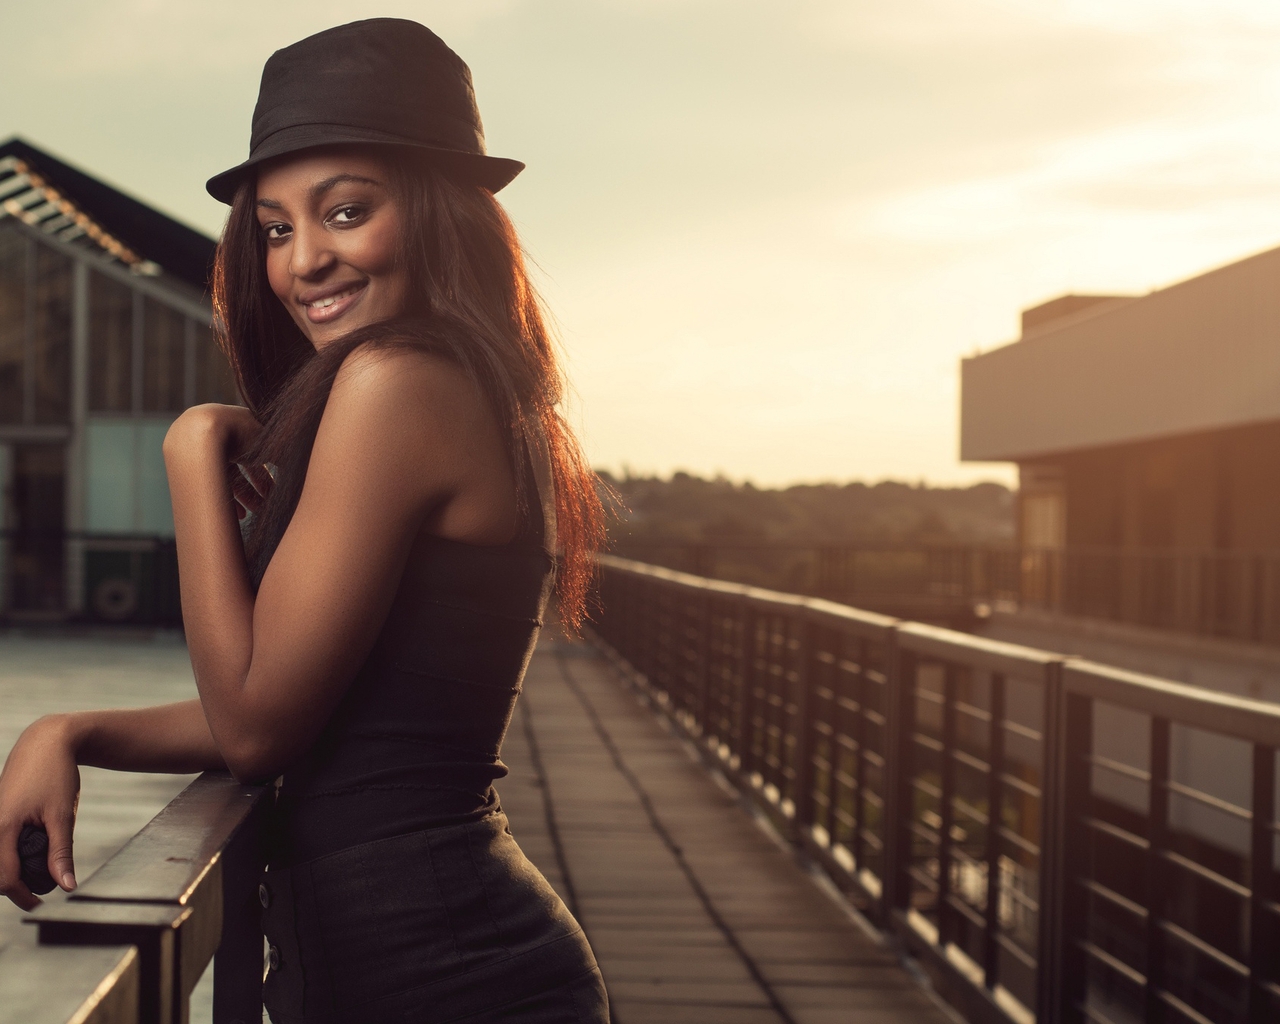 Image: Girl, black, smile, mood, hat, stands, bridge